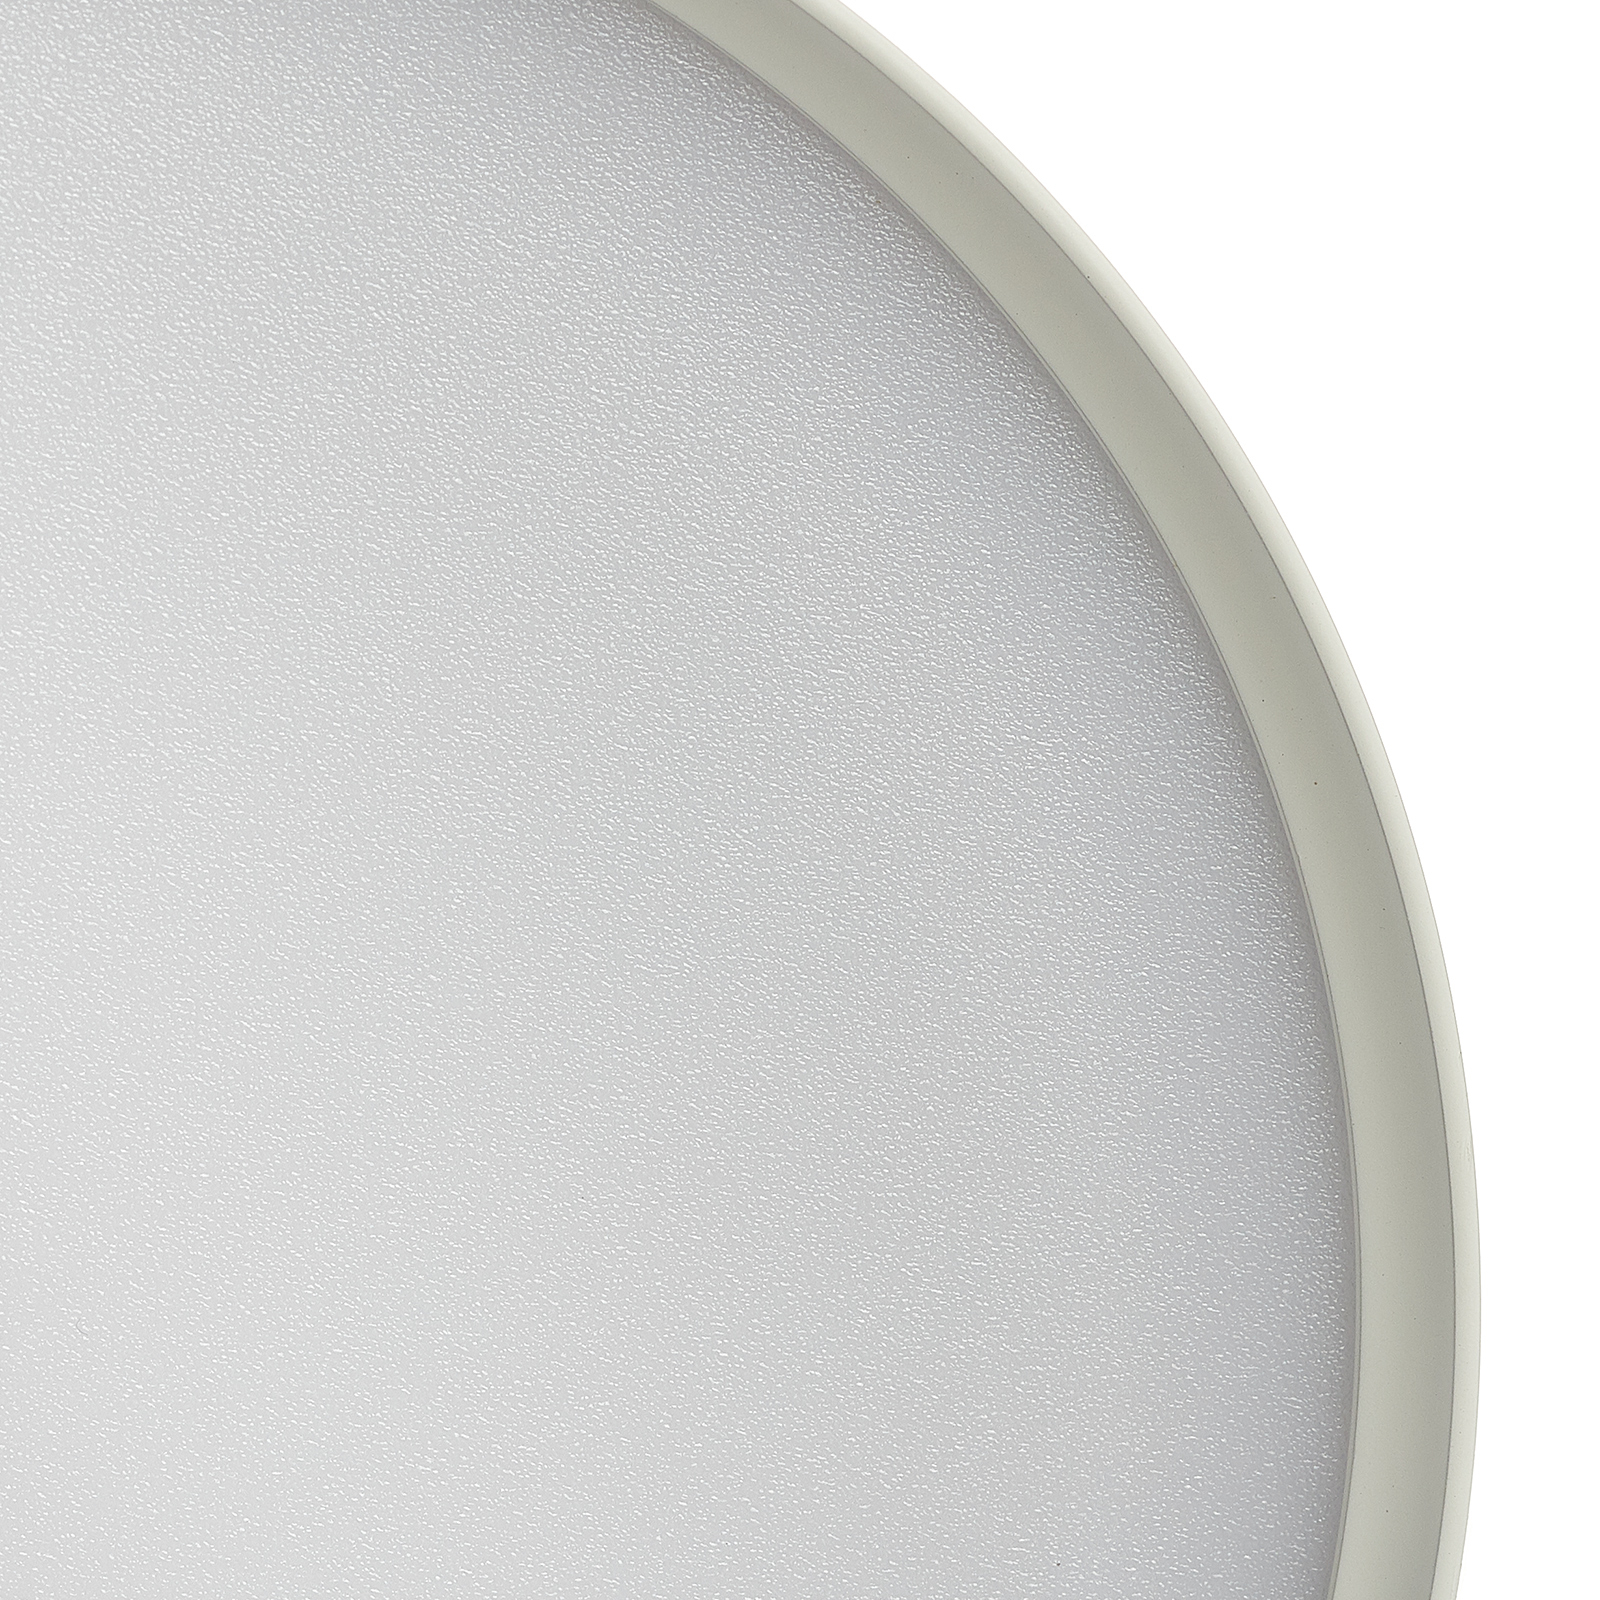 LED stropna svjetiljka Mine u bijeloj boji, Ø 12 cm